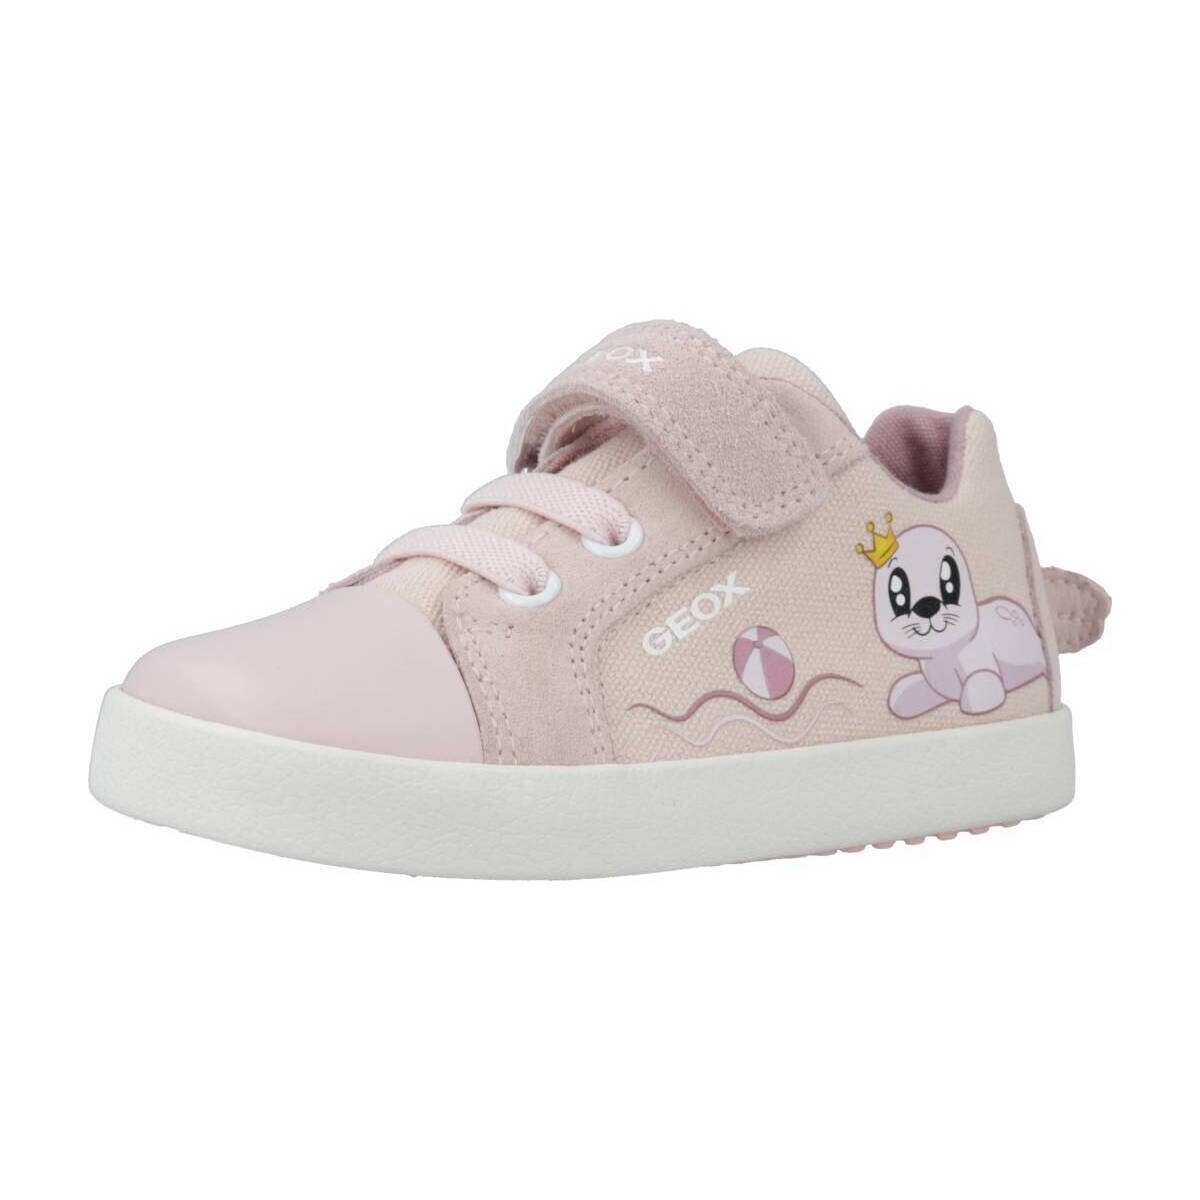 Παπούτσια Κορίτσι Χαμηλά Sneakers Geox B KILWI GIRL C Ροζ